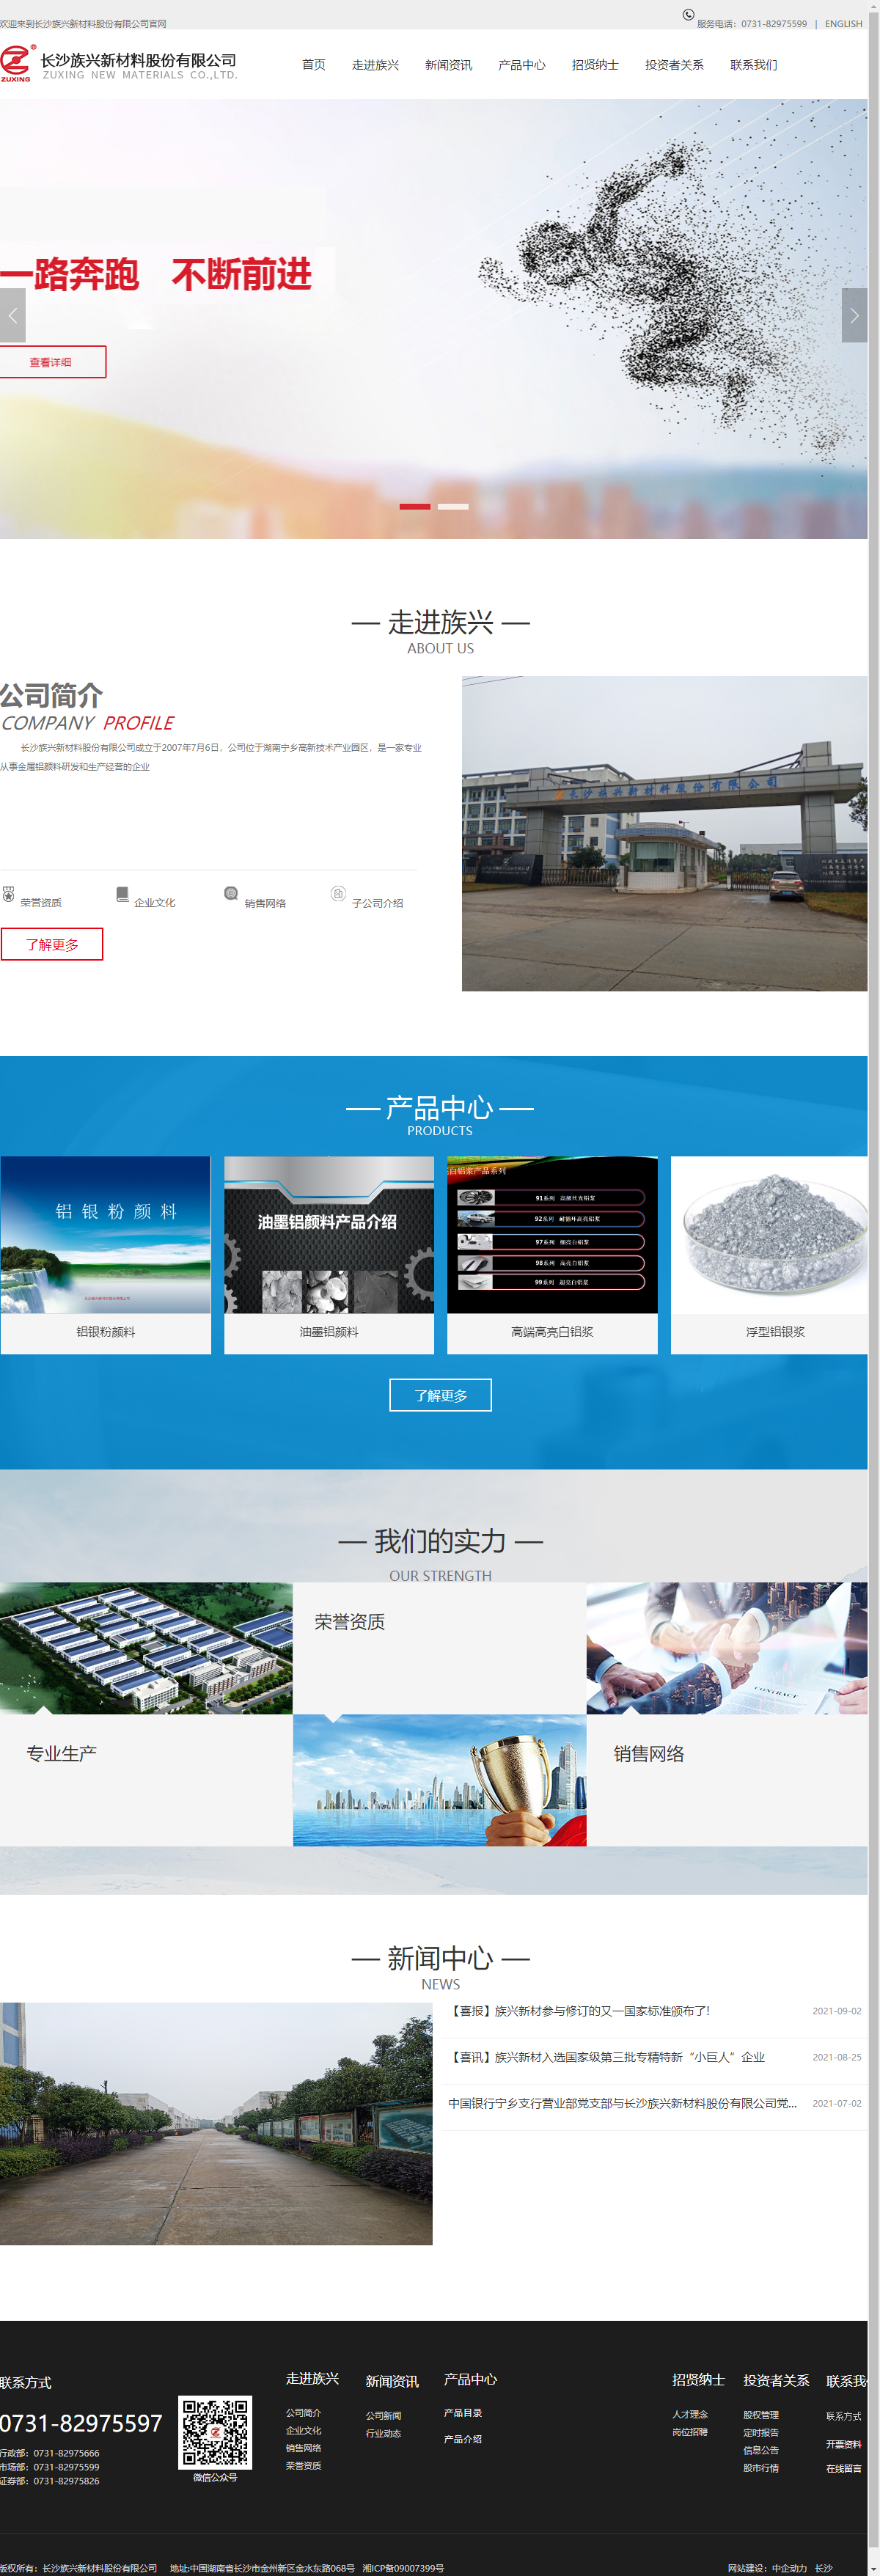 长沙族兴新材料股份有限公司网站案例